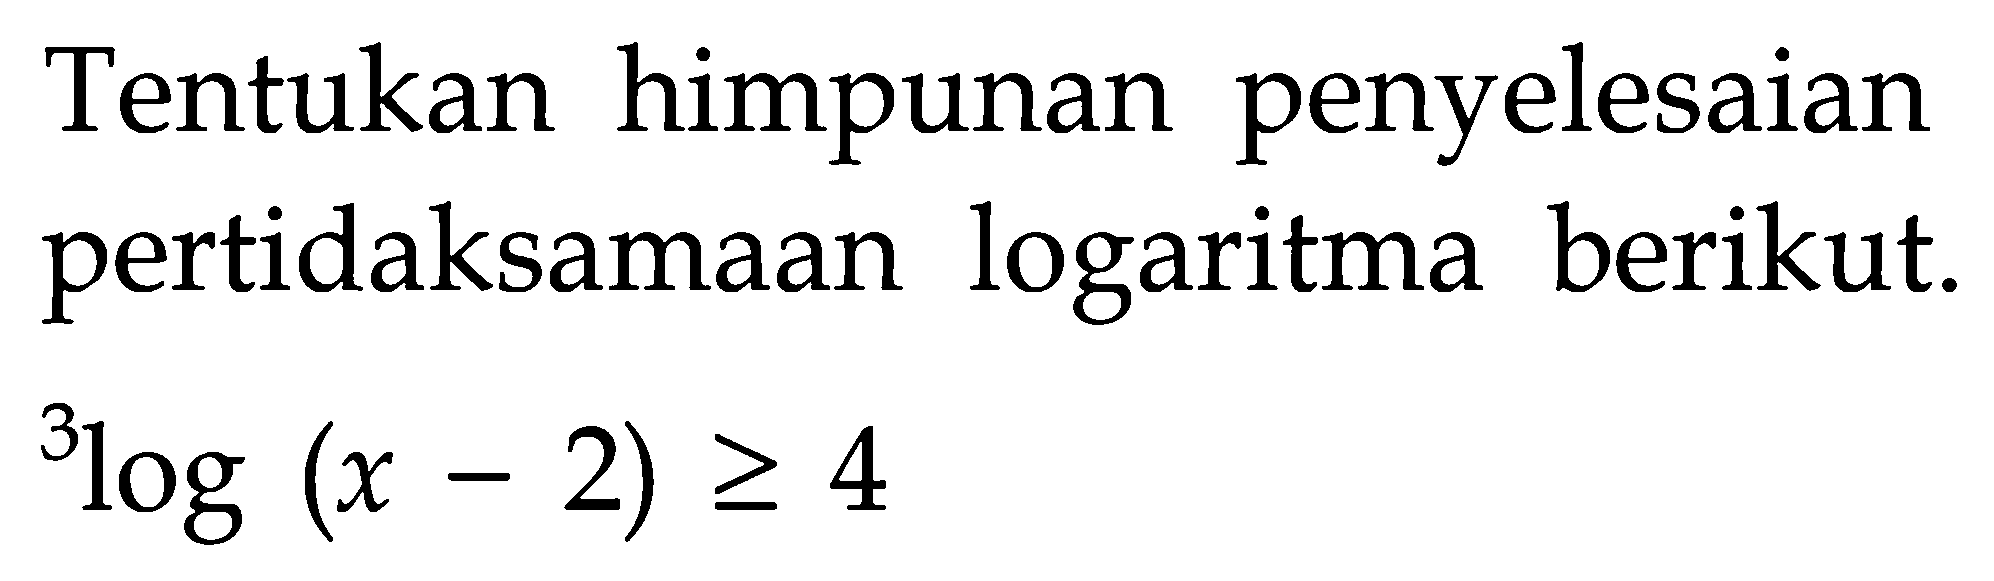 Tentukan himpunan penyelesaian pertidaksamaan logaritma berikut. 3log(x-2)>=4